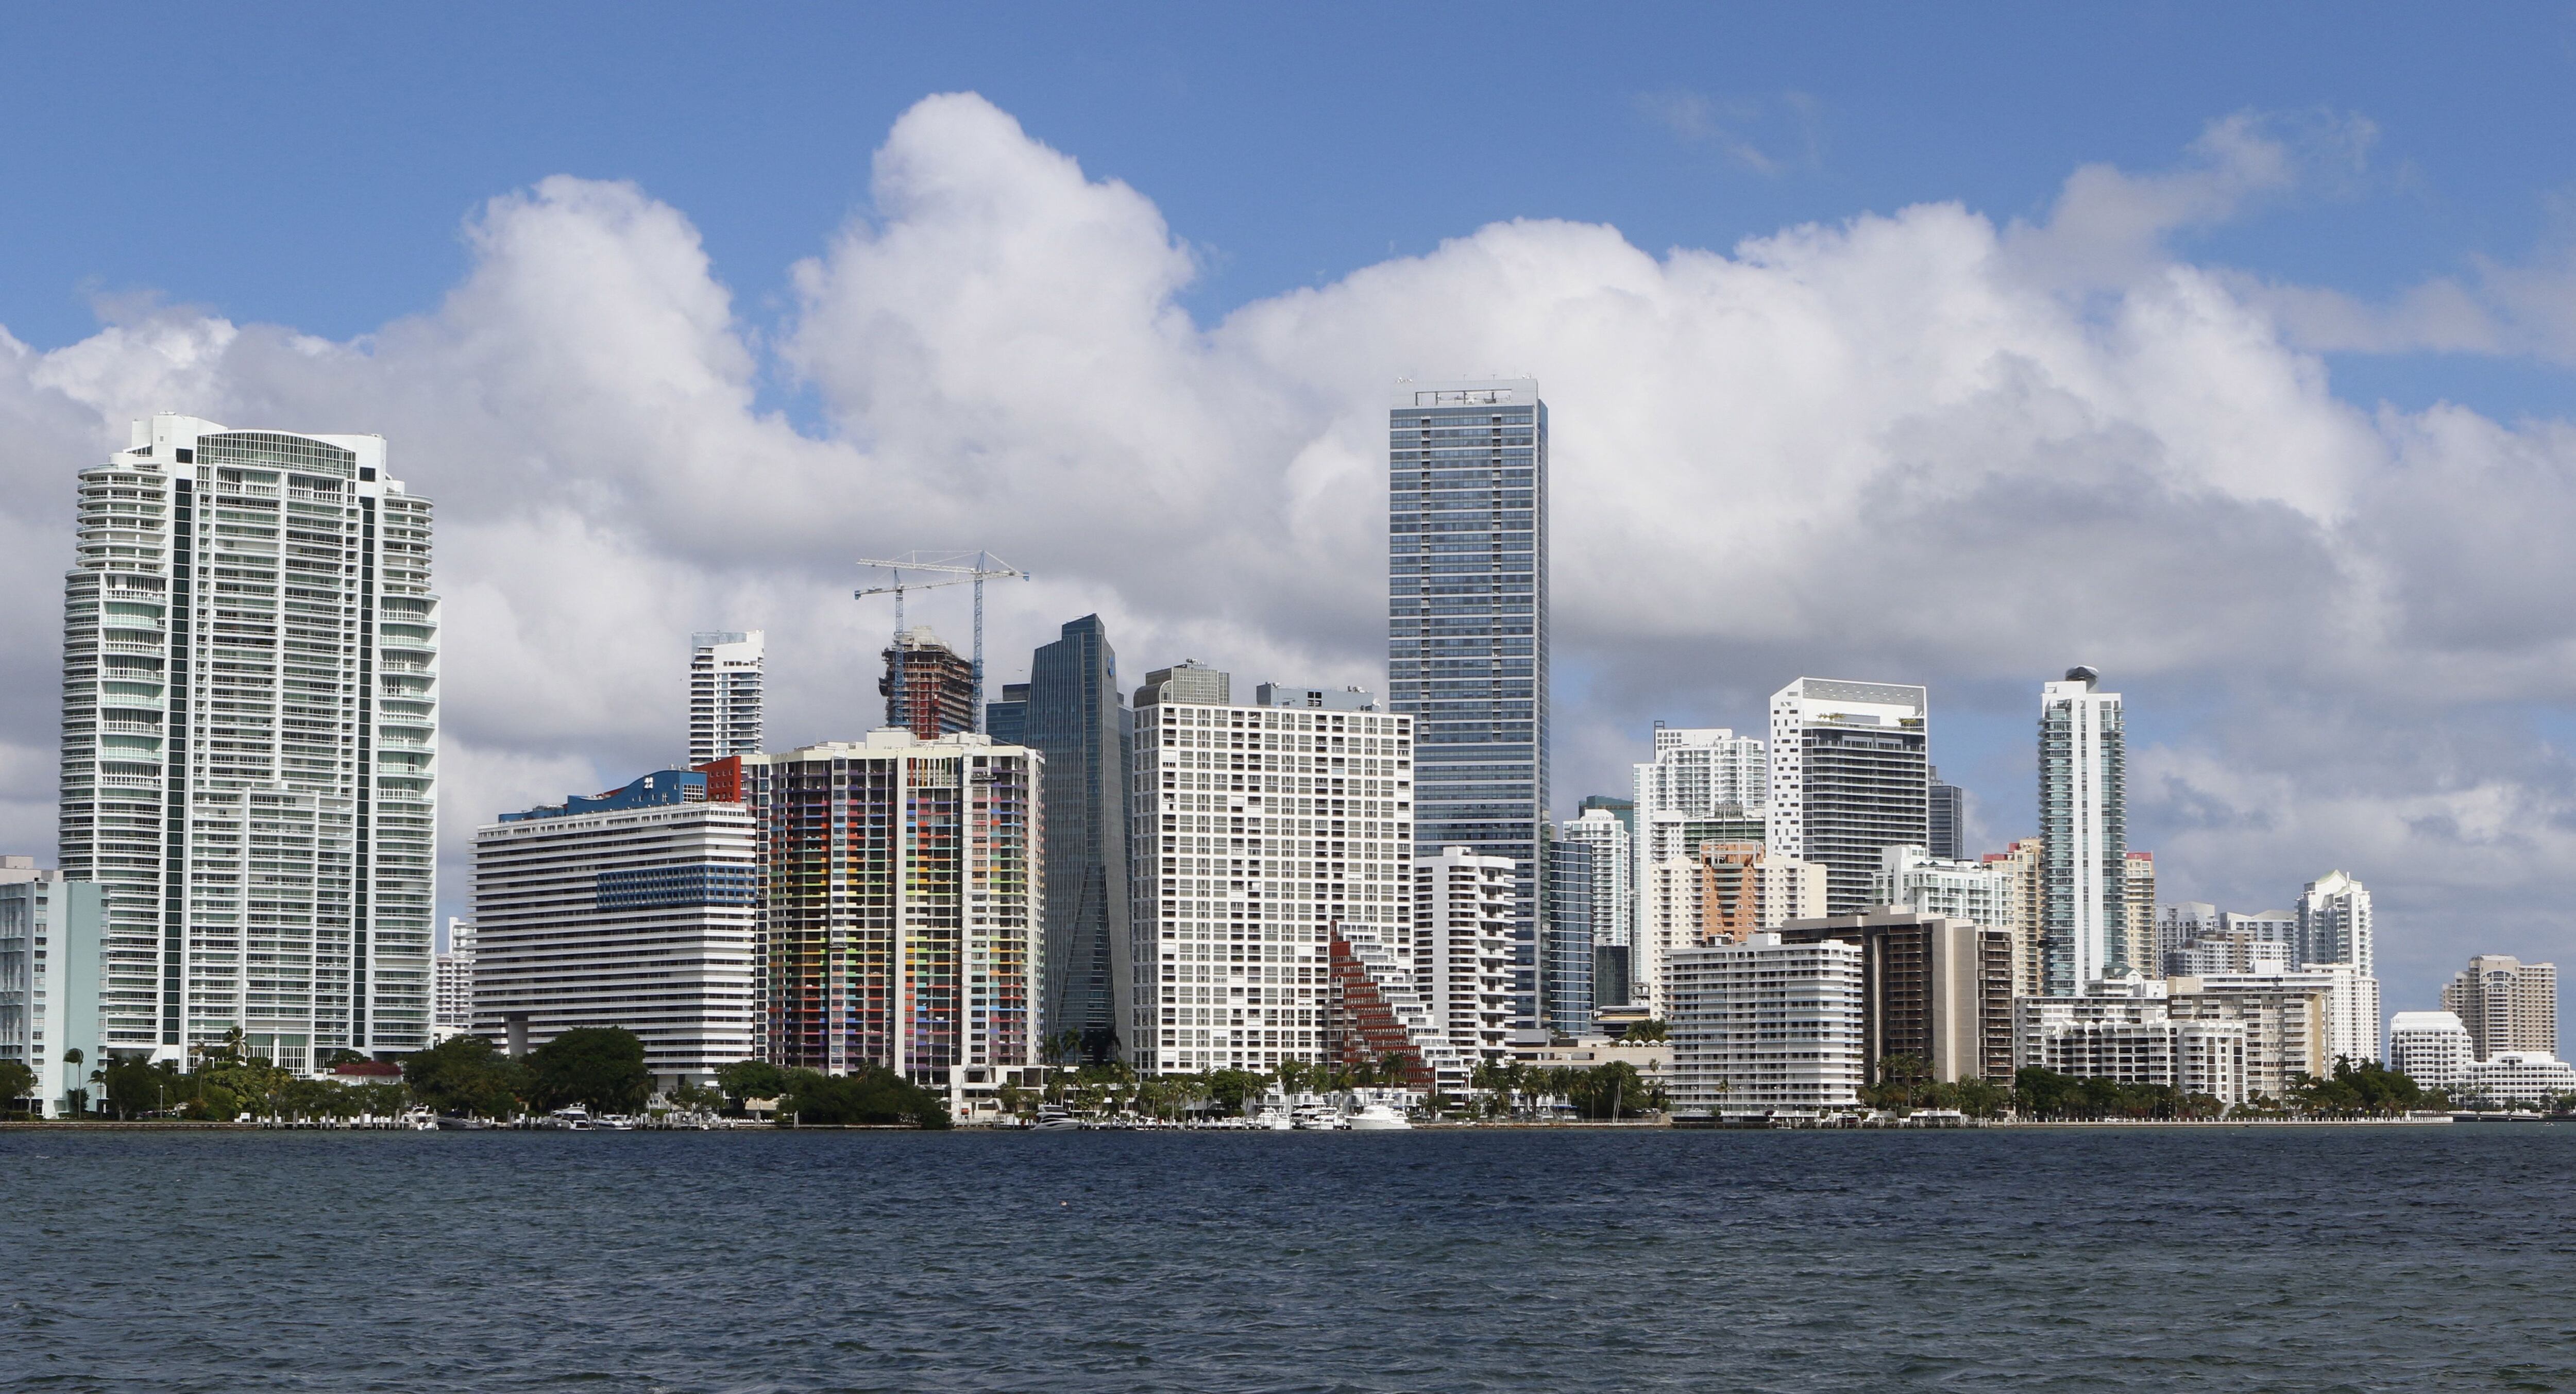 Más de 1.100 multinacionales y una significativa inversión financiera destacan a Miami como un centro económico en expansión. (REUTERS/Joe Skipper)